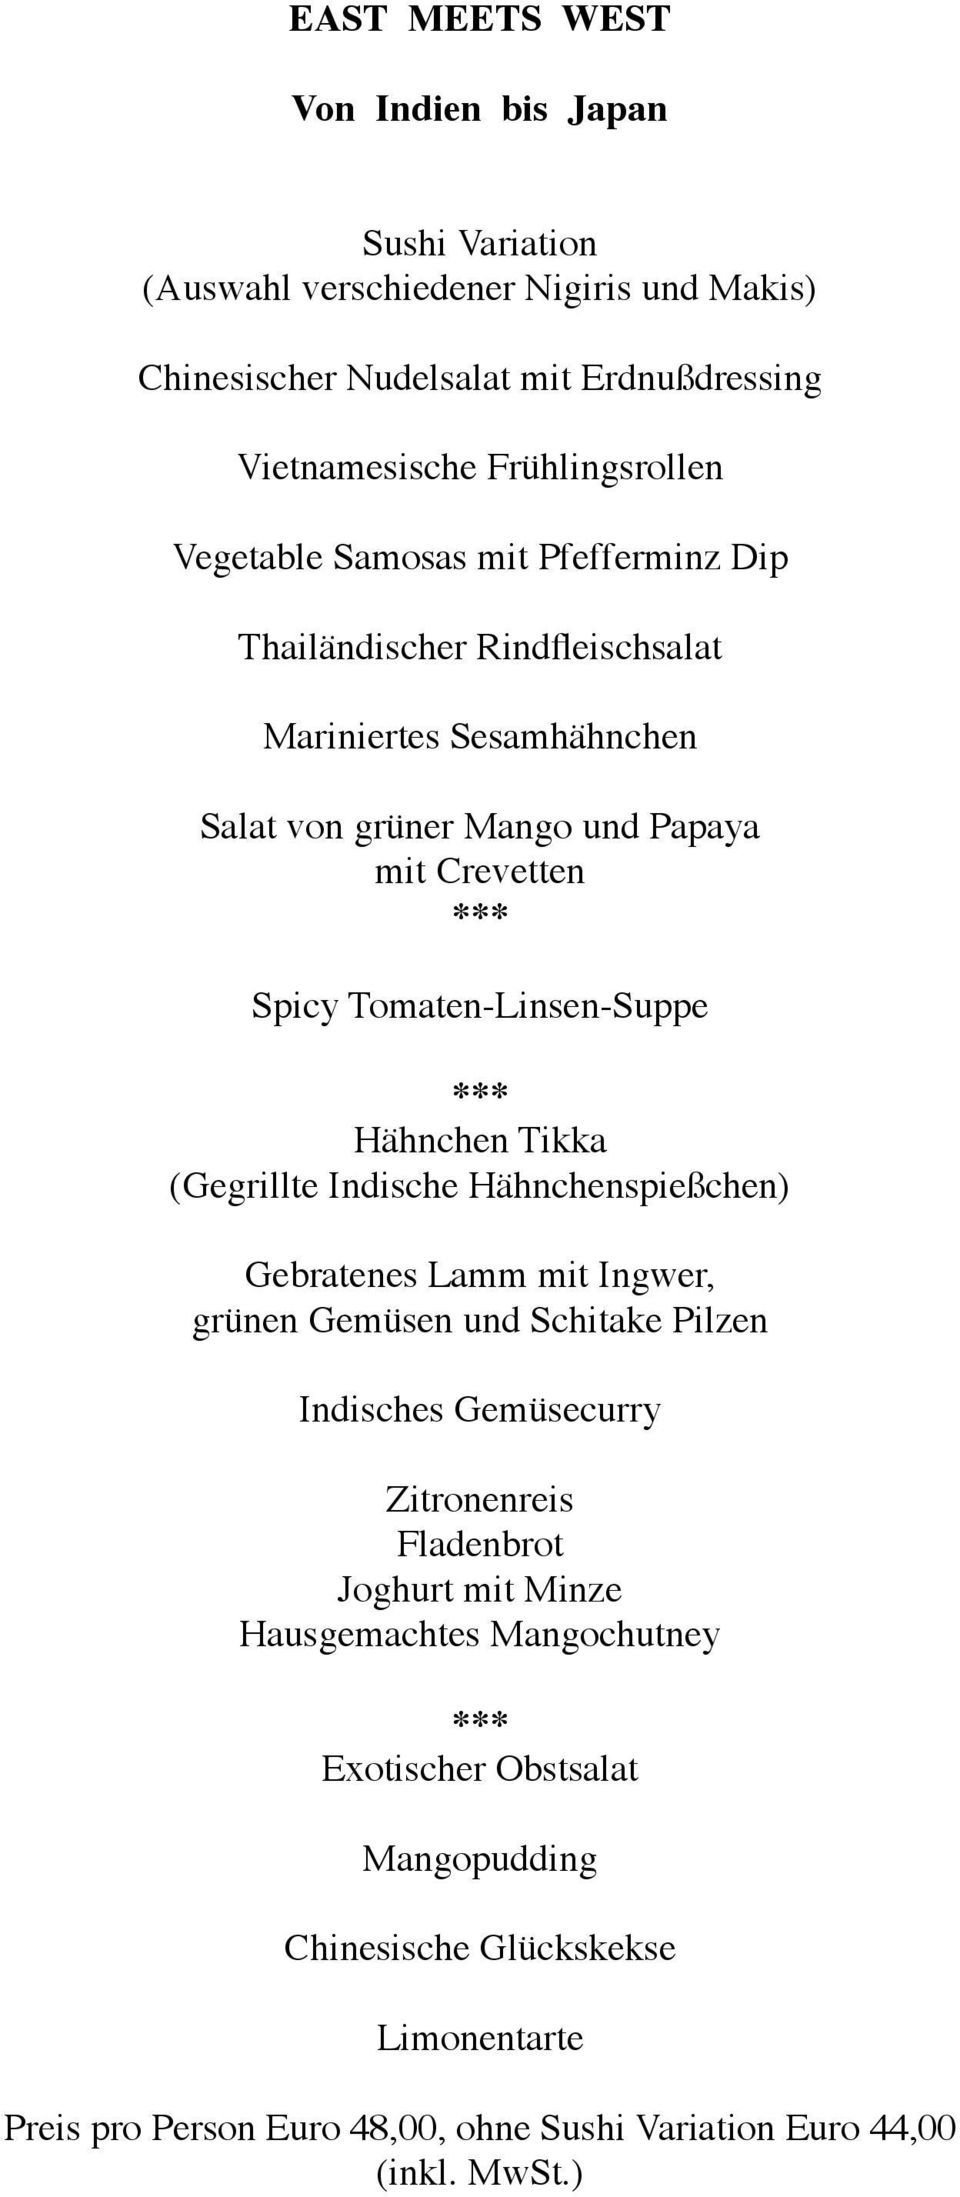 Hähnchen Tikka (Gegrillte Indische Hähnchenspießchen) Gebratenes Lamm mit Ingwer, grünen Gemüsen und Schitake Pilzen Indisches Gemüsecurry Zitronenreis Fladenbrot Joghurt